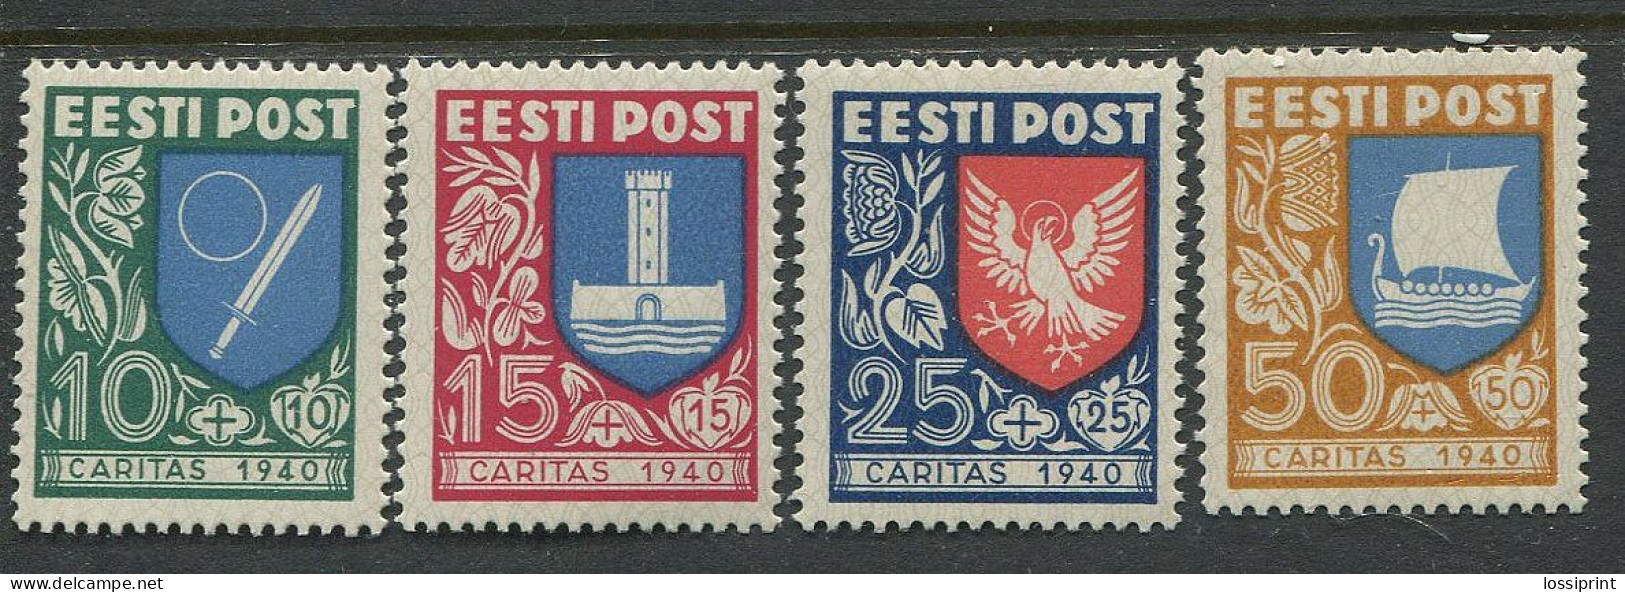 Estonia:Unused Stamps Serie Caritas 1940, Coat Of Arms, 1940, MNH - Estland